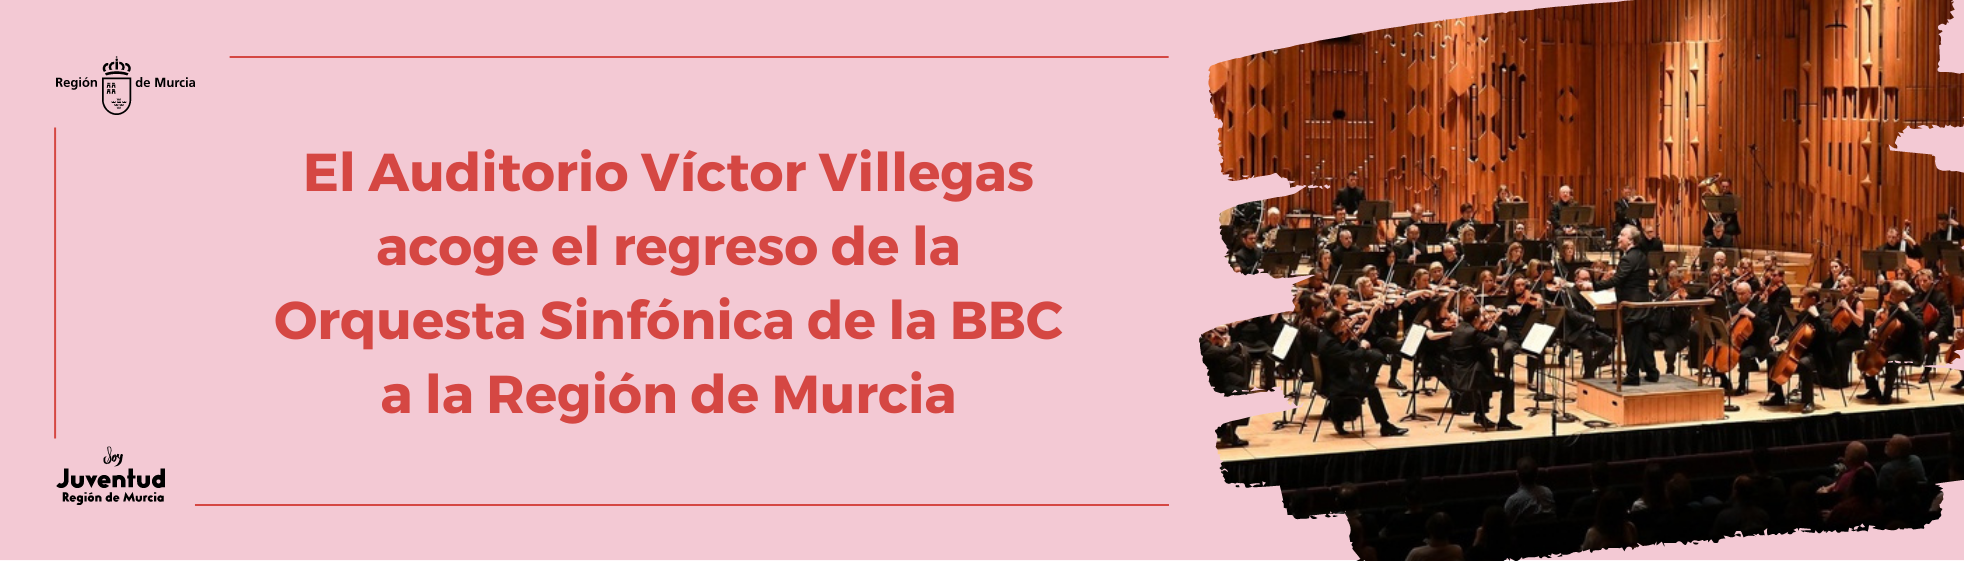 El Auditorio Víctor Villegas acoge el regreso de la Orquesta Sinfónica de la BBC a la Región de Murcia